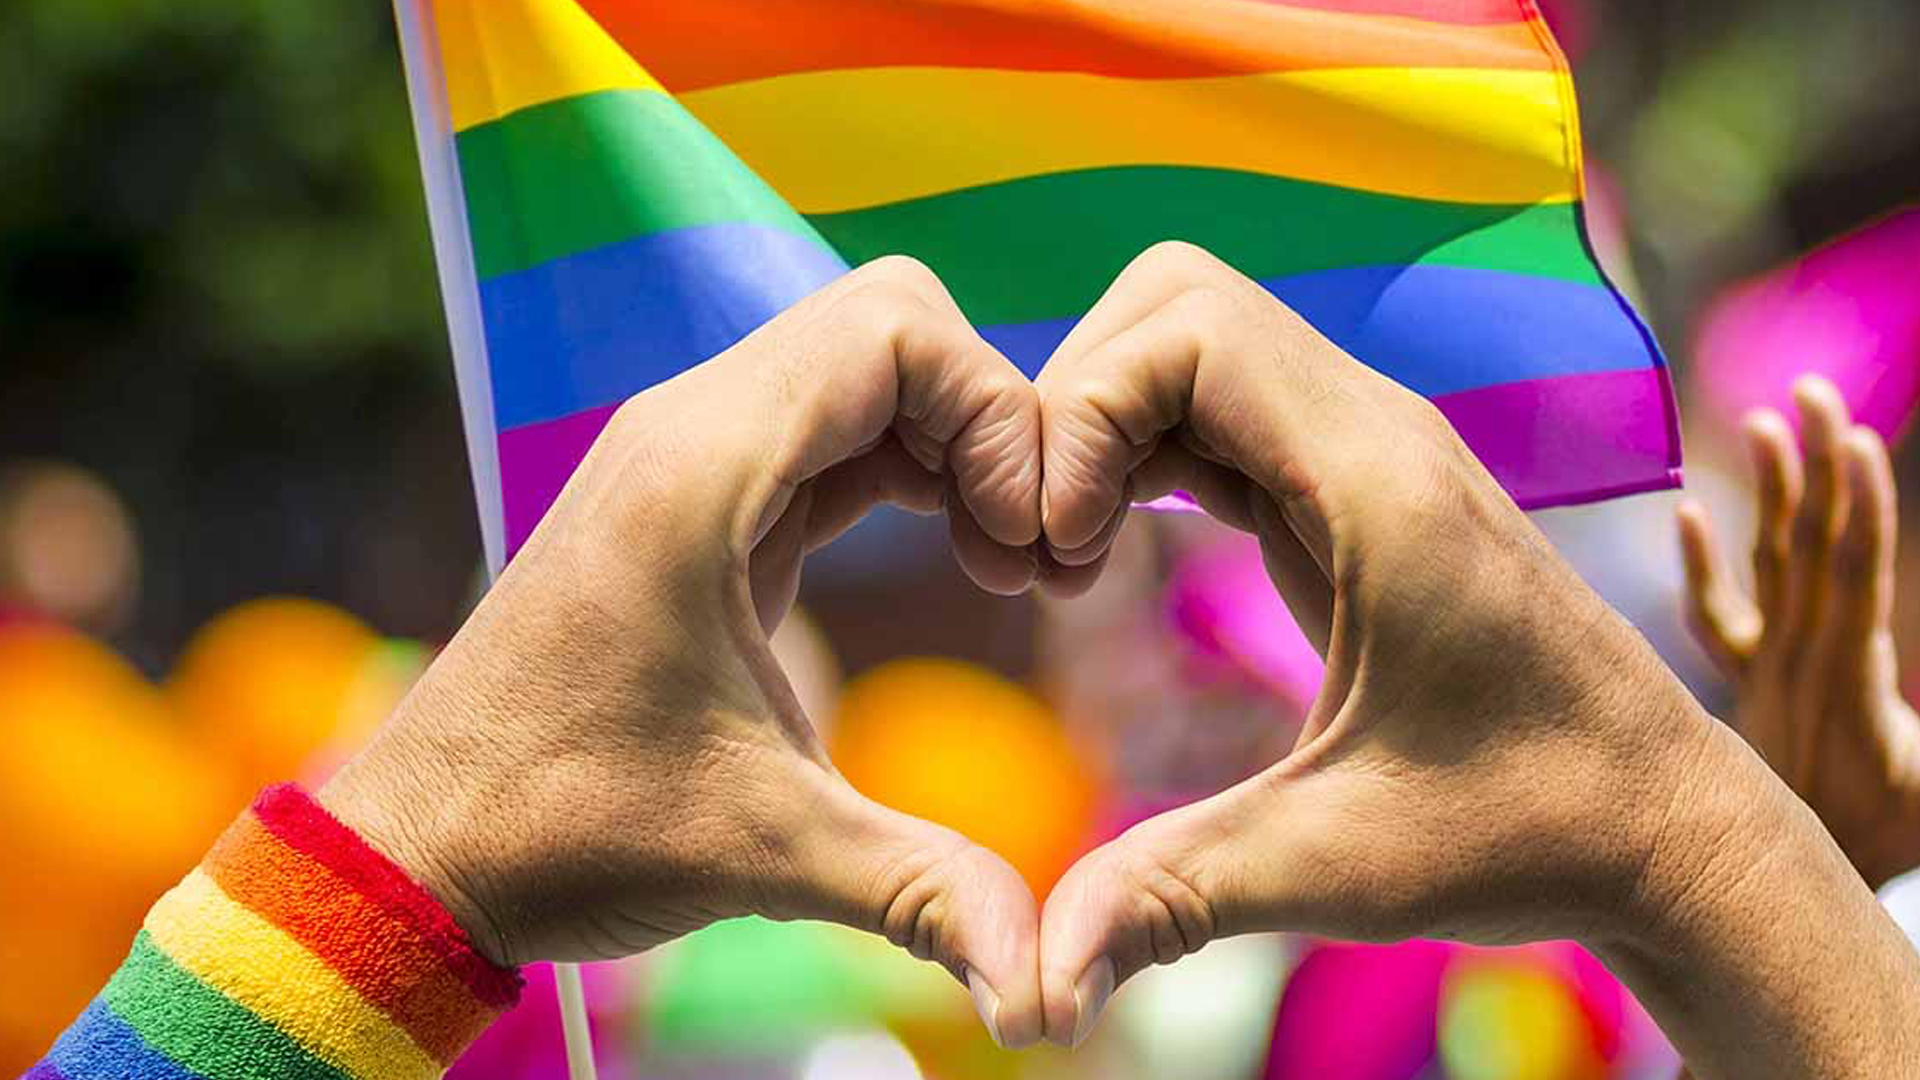 En El Tigre proponen “contrato privado” para unión de parejas LGBTI+: el costo es de 400$